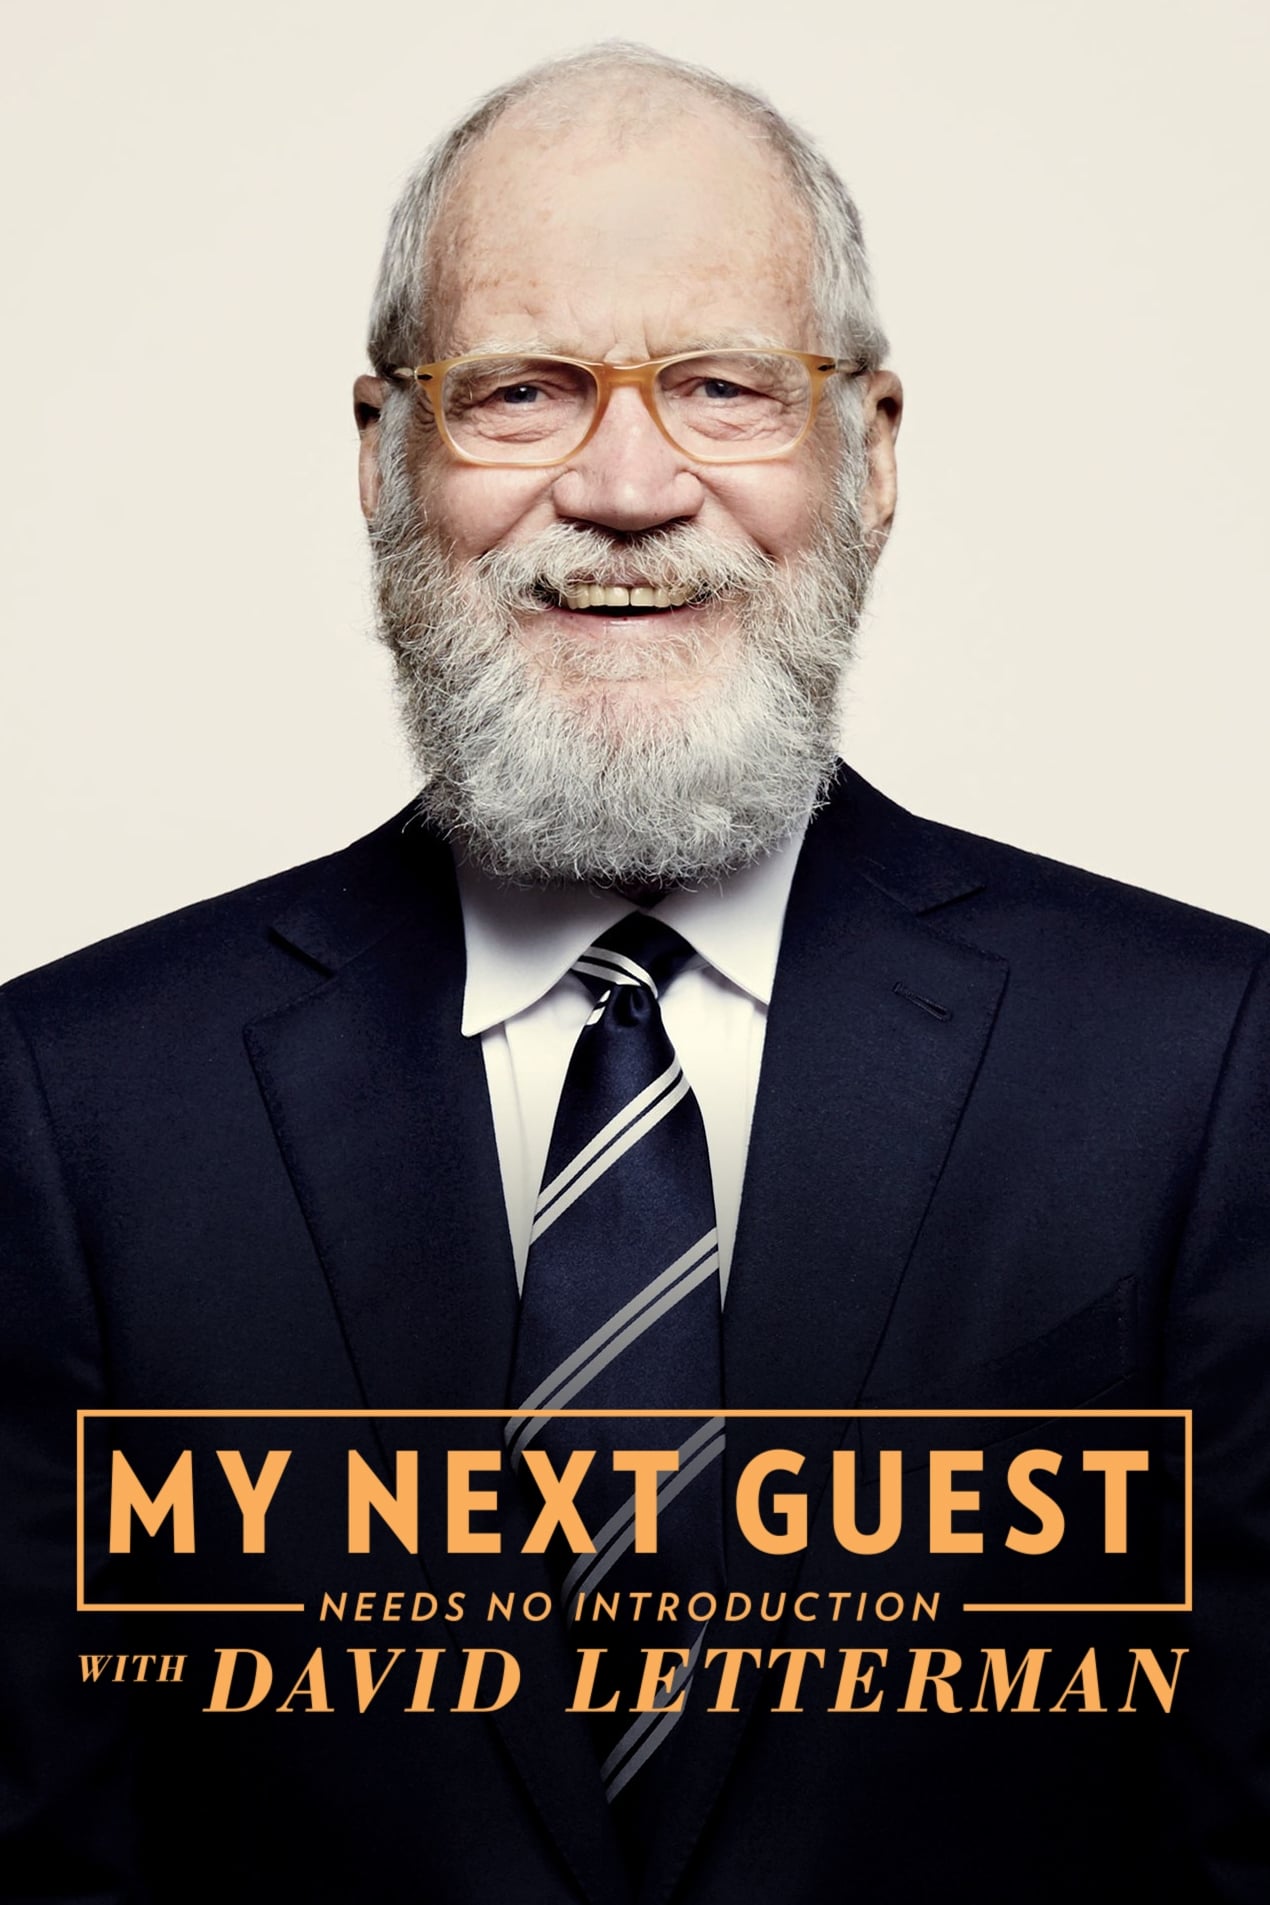 No necesitan presentación con David Letterman